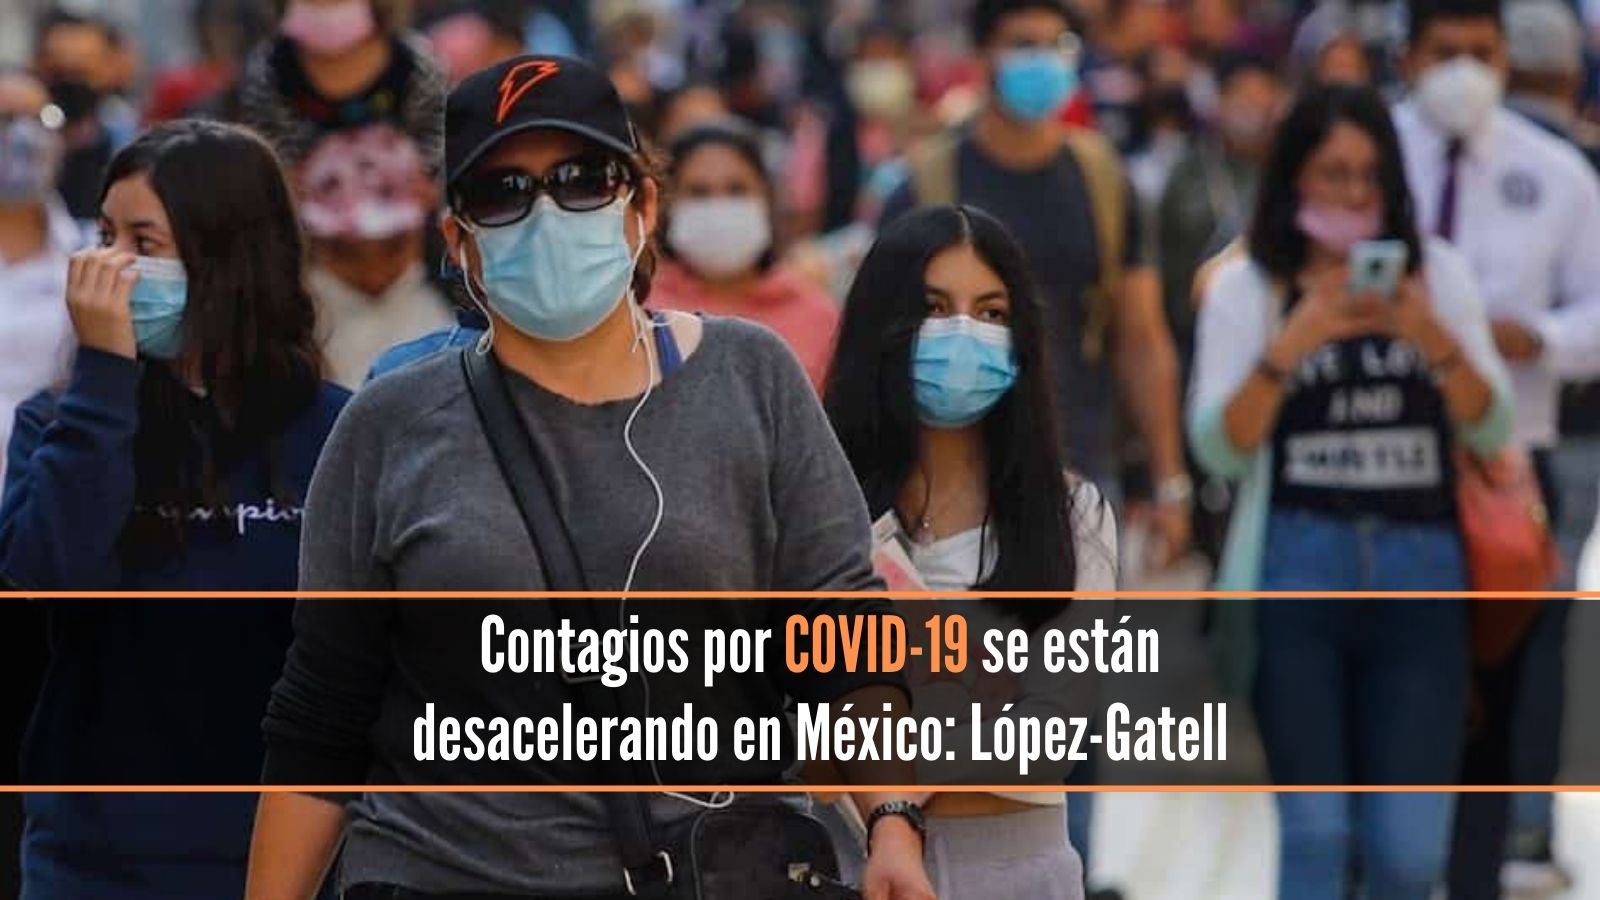 Contagios por COVID-19 en México se están desacelerando